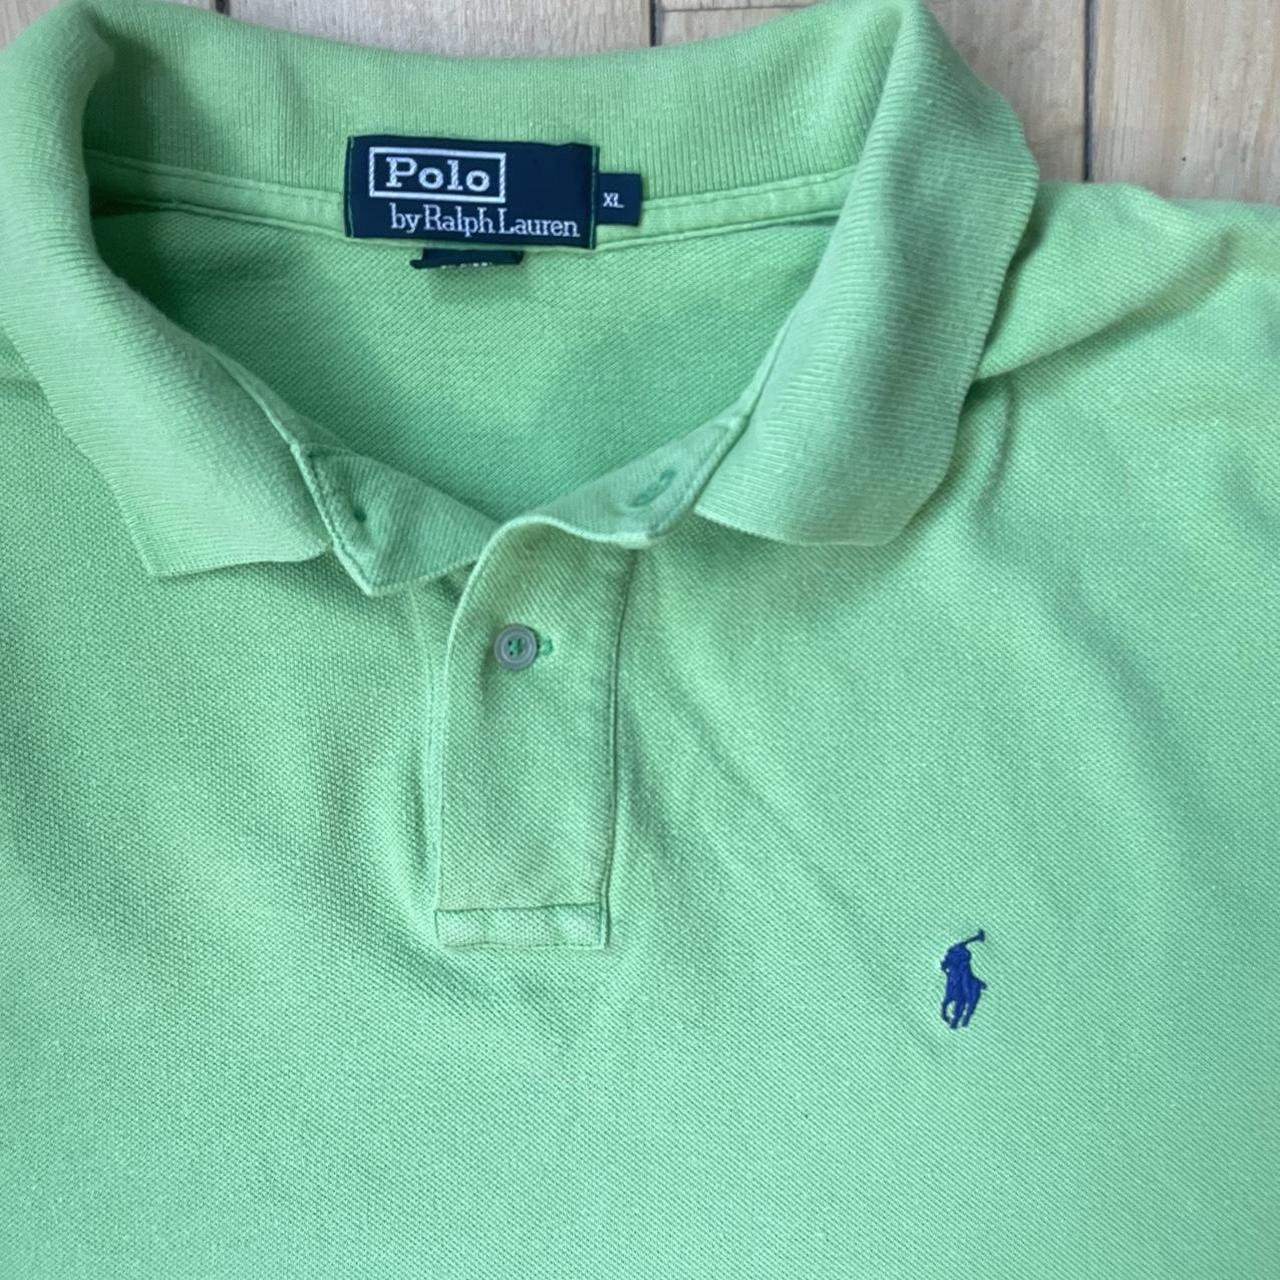 Ralph Lauren Polo shirt Light green lime colour... - Depop